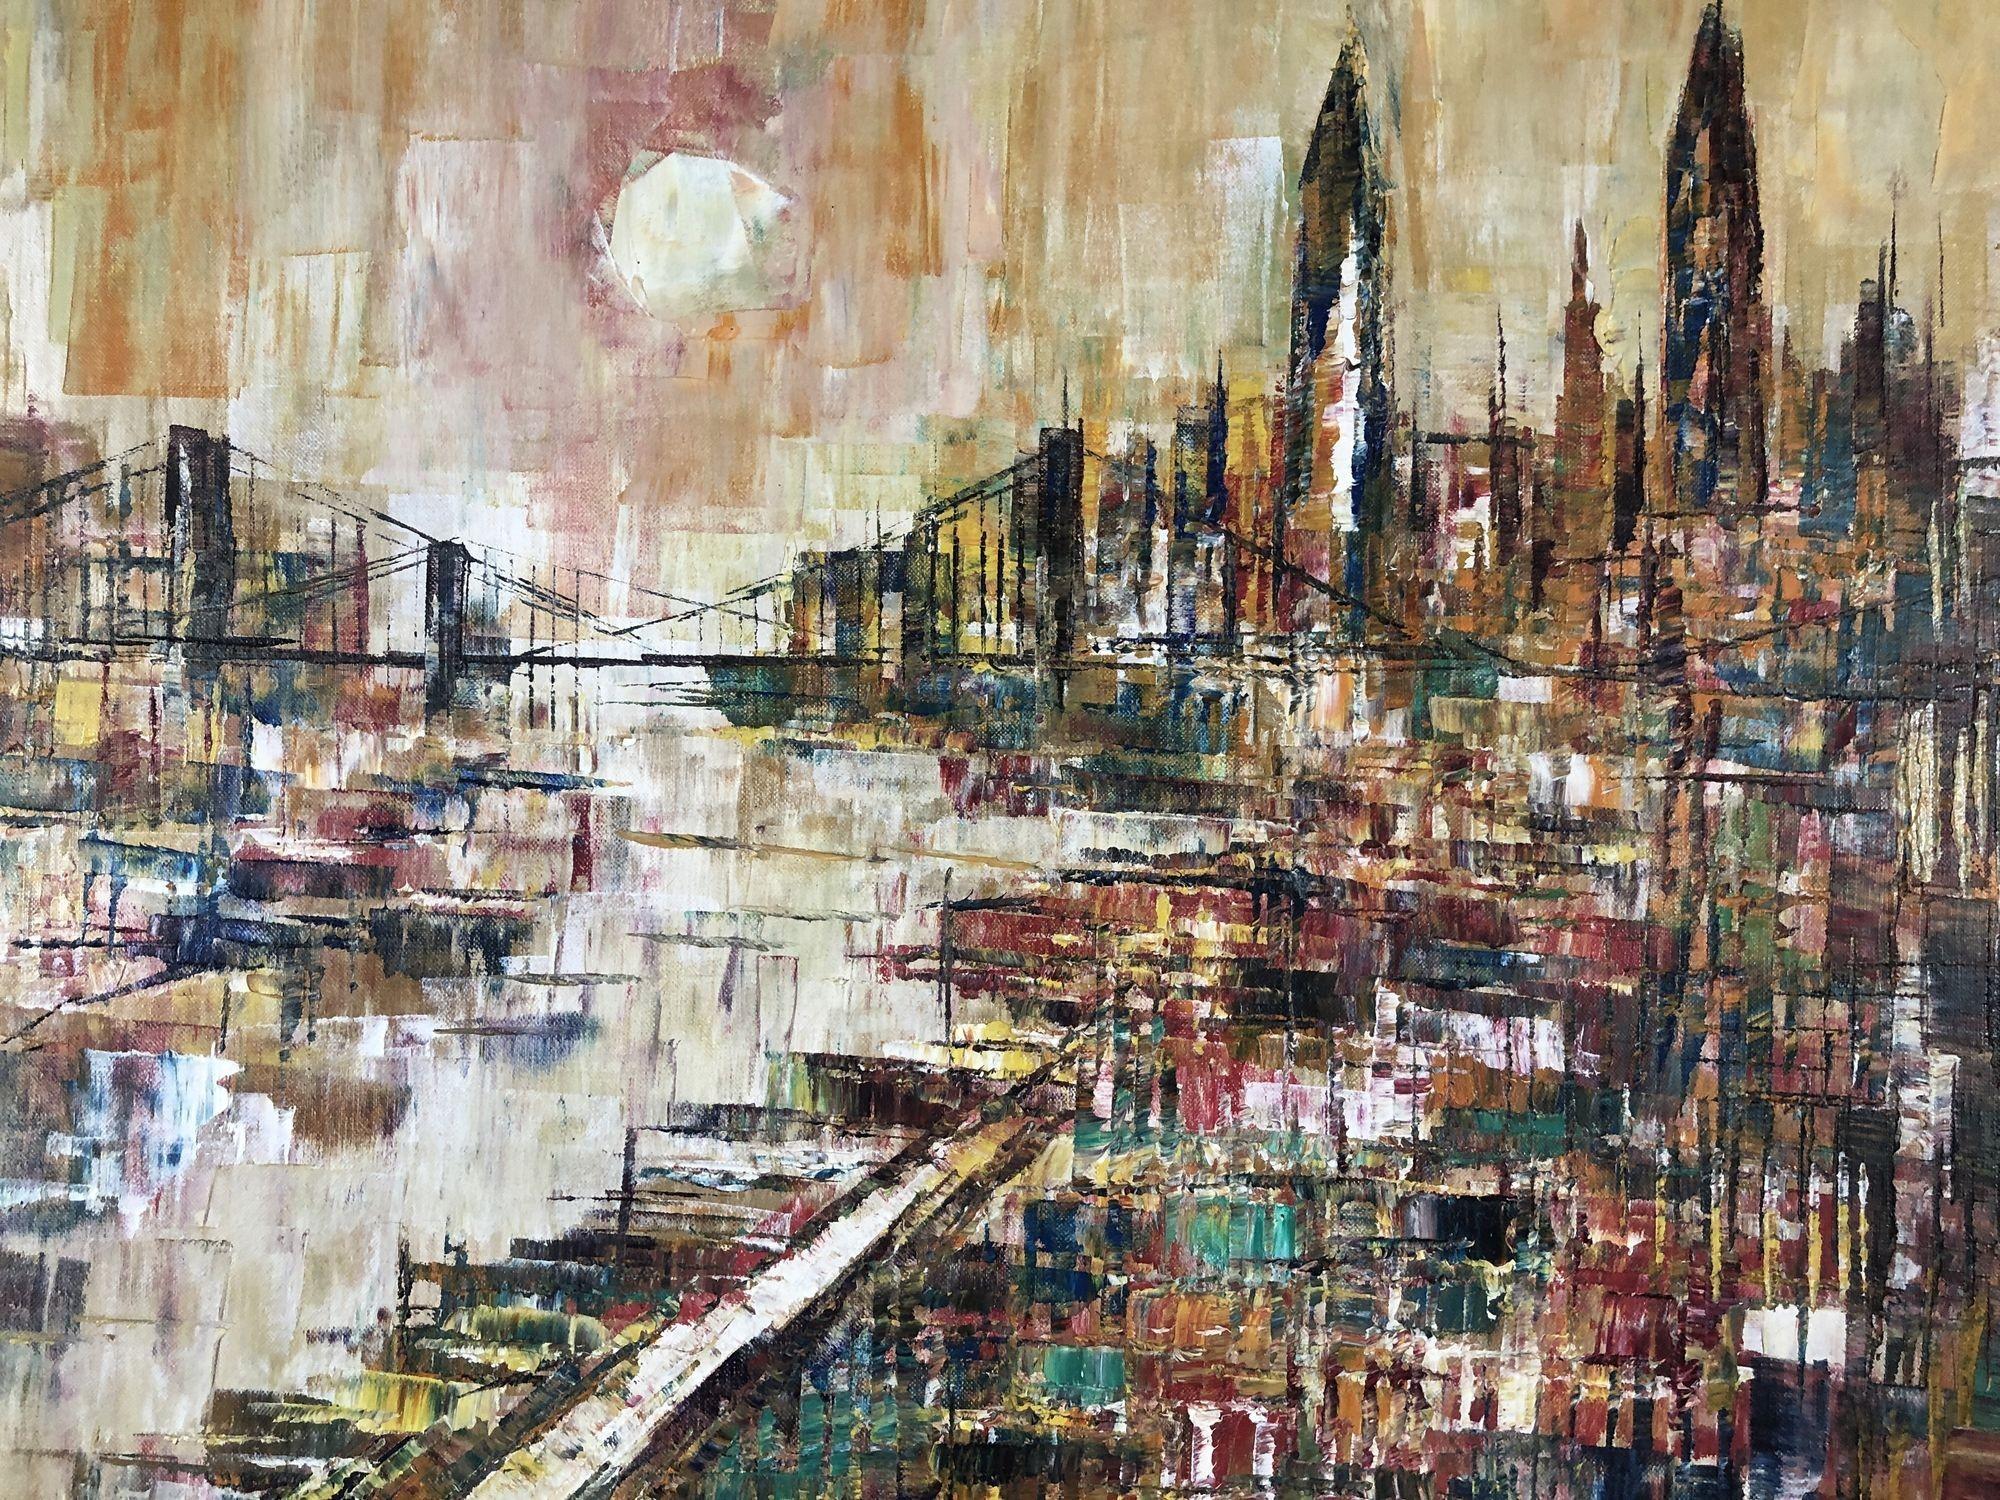 Œuvre d'art contemporain du milieu du siècle, peinture à l'huile représentant la ligne d'horizon d'une ville avec le soleil se couchant sur un pont, signée par M-One. Ce tableau est présenté dans un cadre en bois aux détails festonnés et aux accents